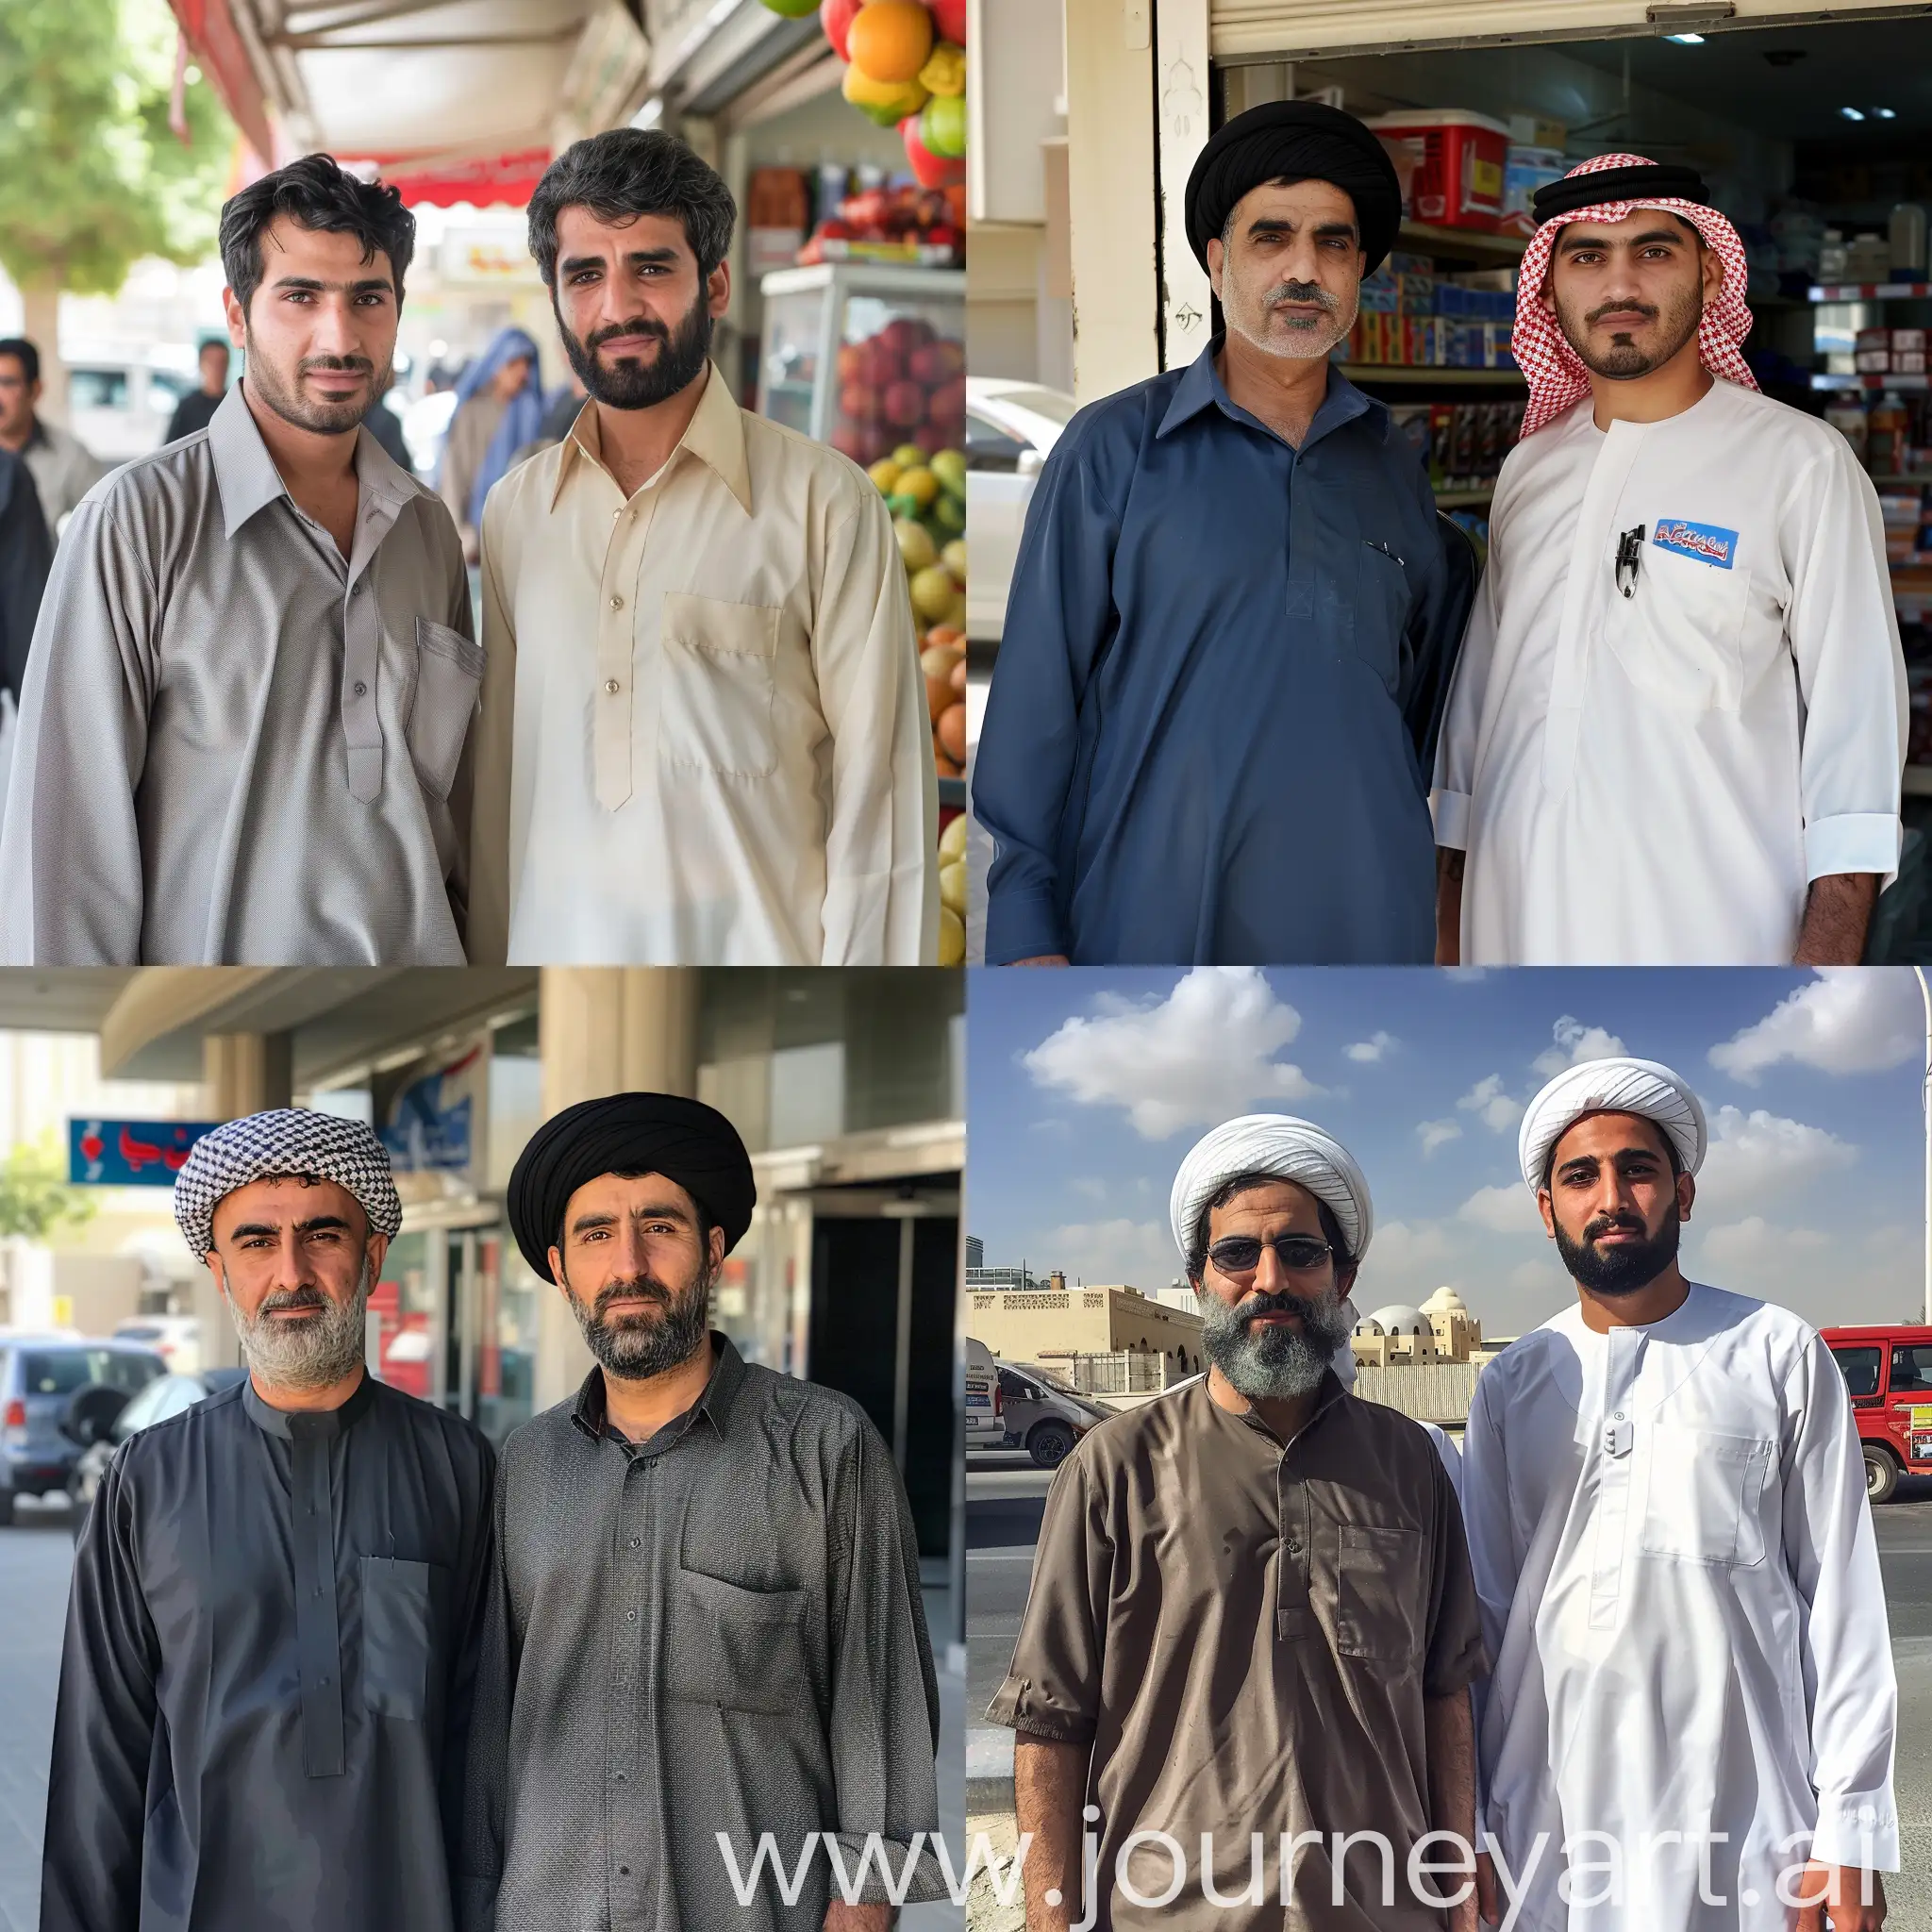 Иранские парни работают клерками в Дубае